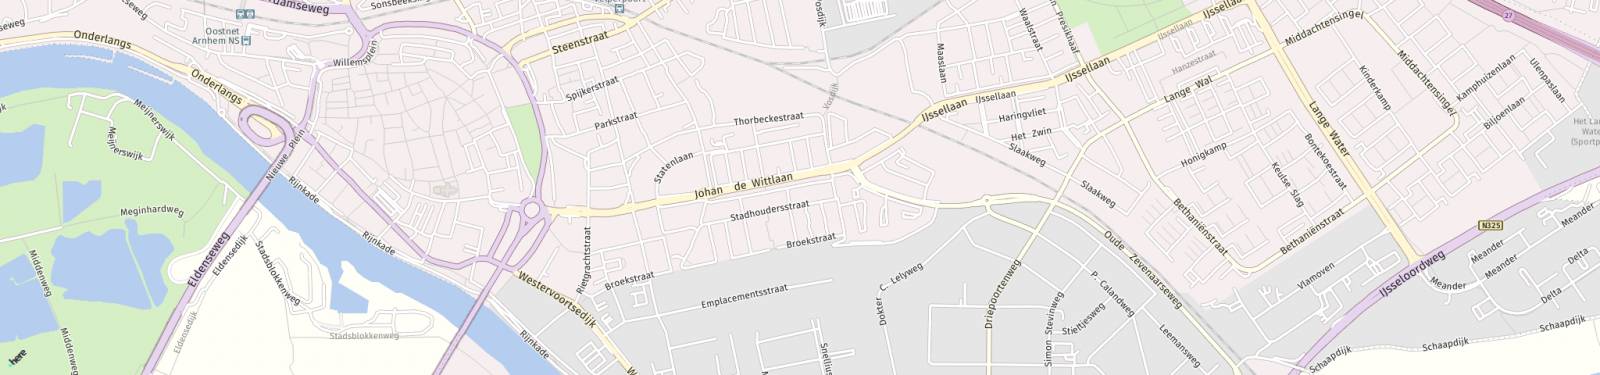 Kaart met locatie Appartement Johan de Wittlaan